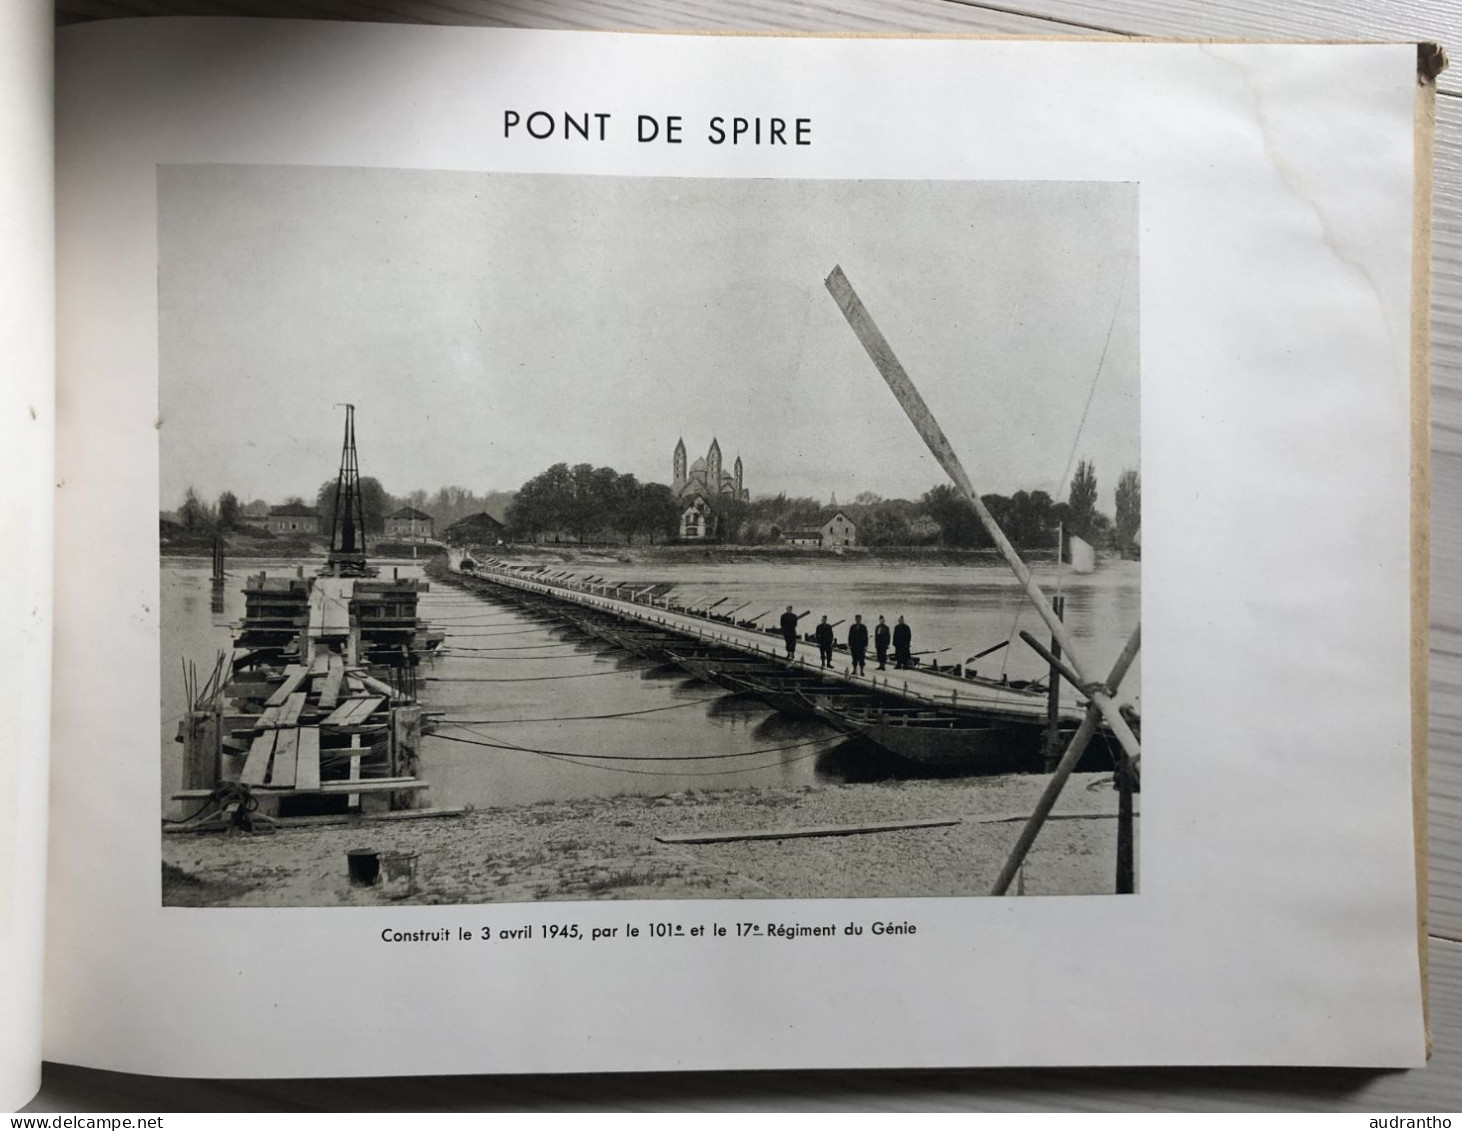 WW2 livre Le RHIN avril 1945 - Génie 1er armée Rhin et Danube - Pont De Spire De Gaulle - Delattre de Tassigny